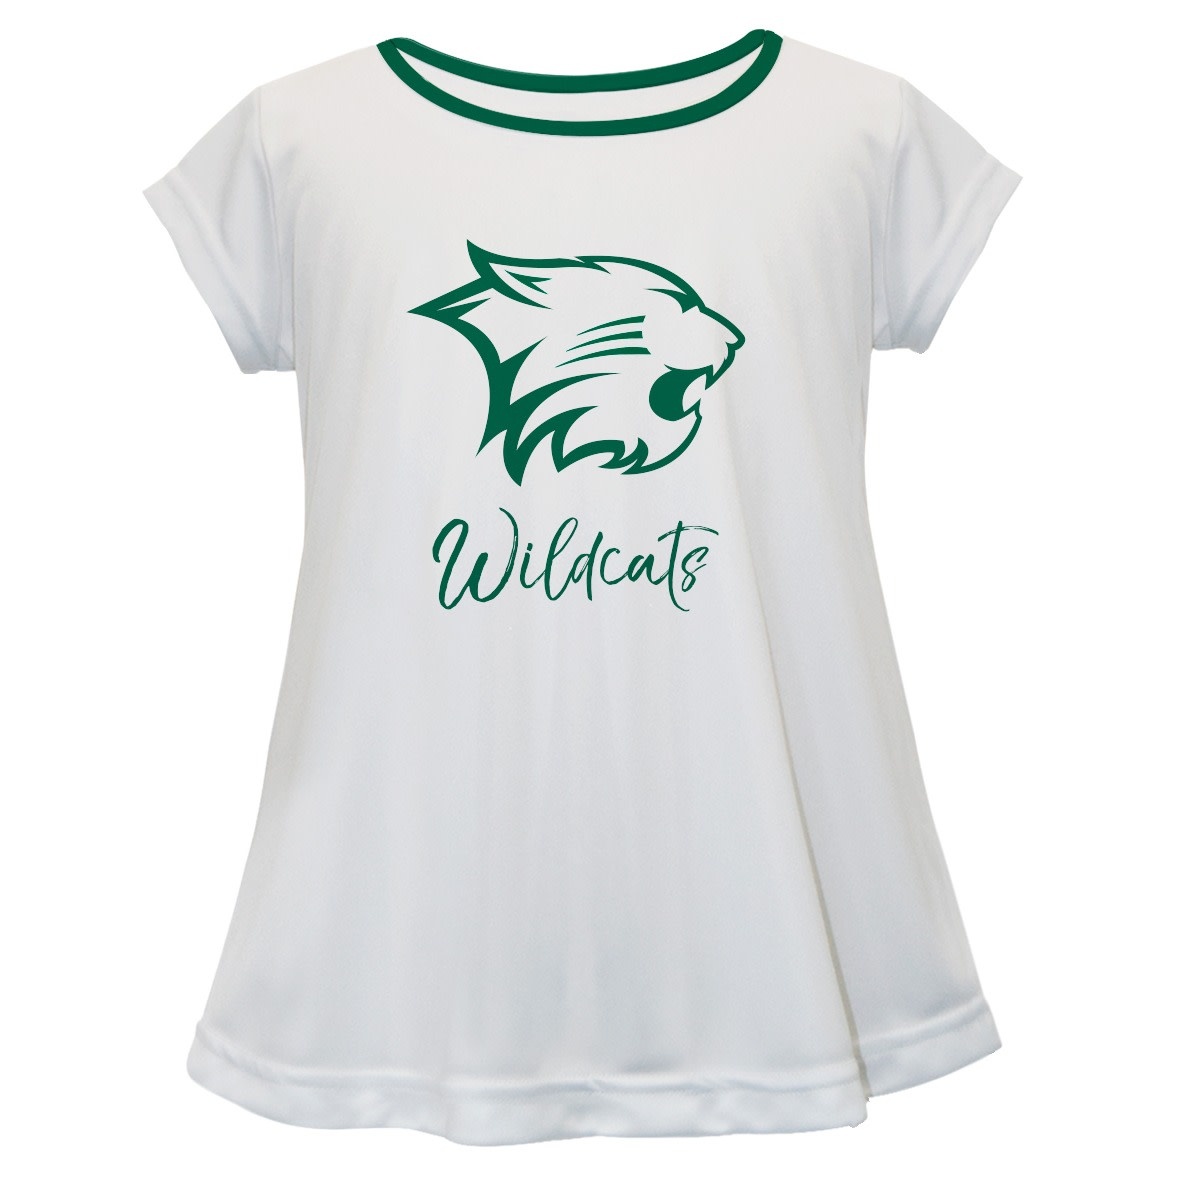 Vive La Fete Dress: Vive La Fete Girls Game Day Logo Wildcats White